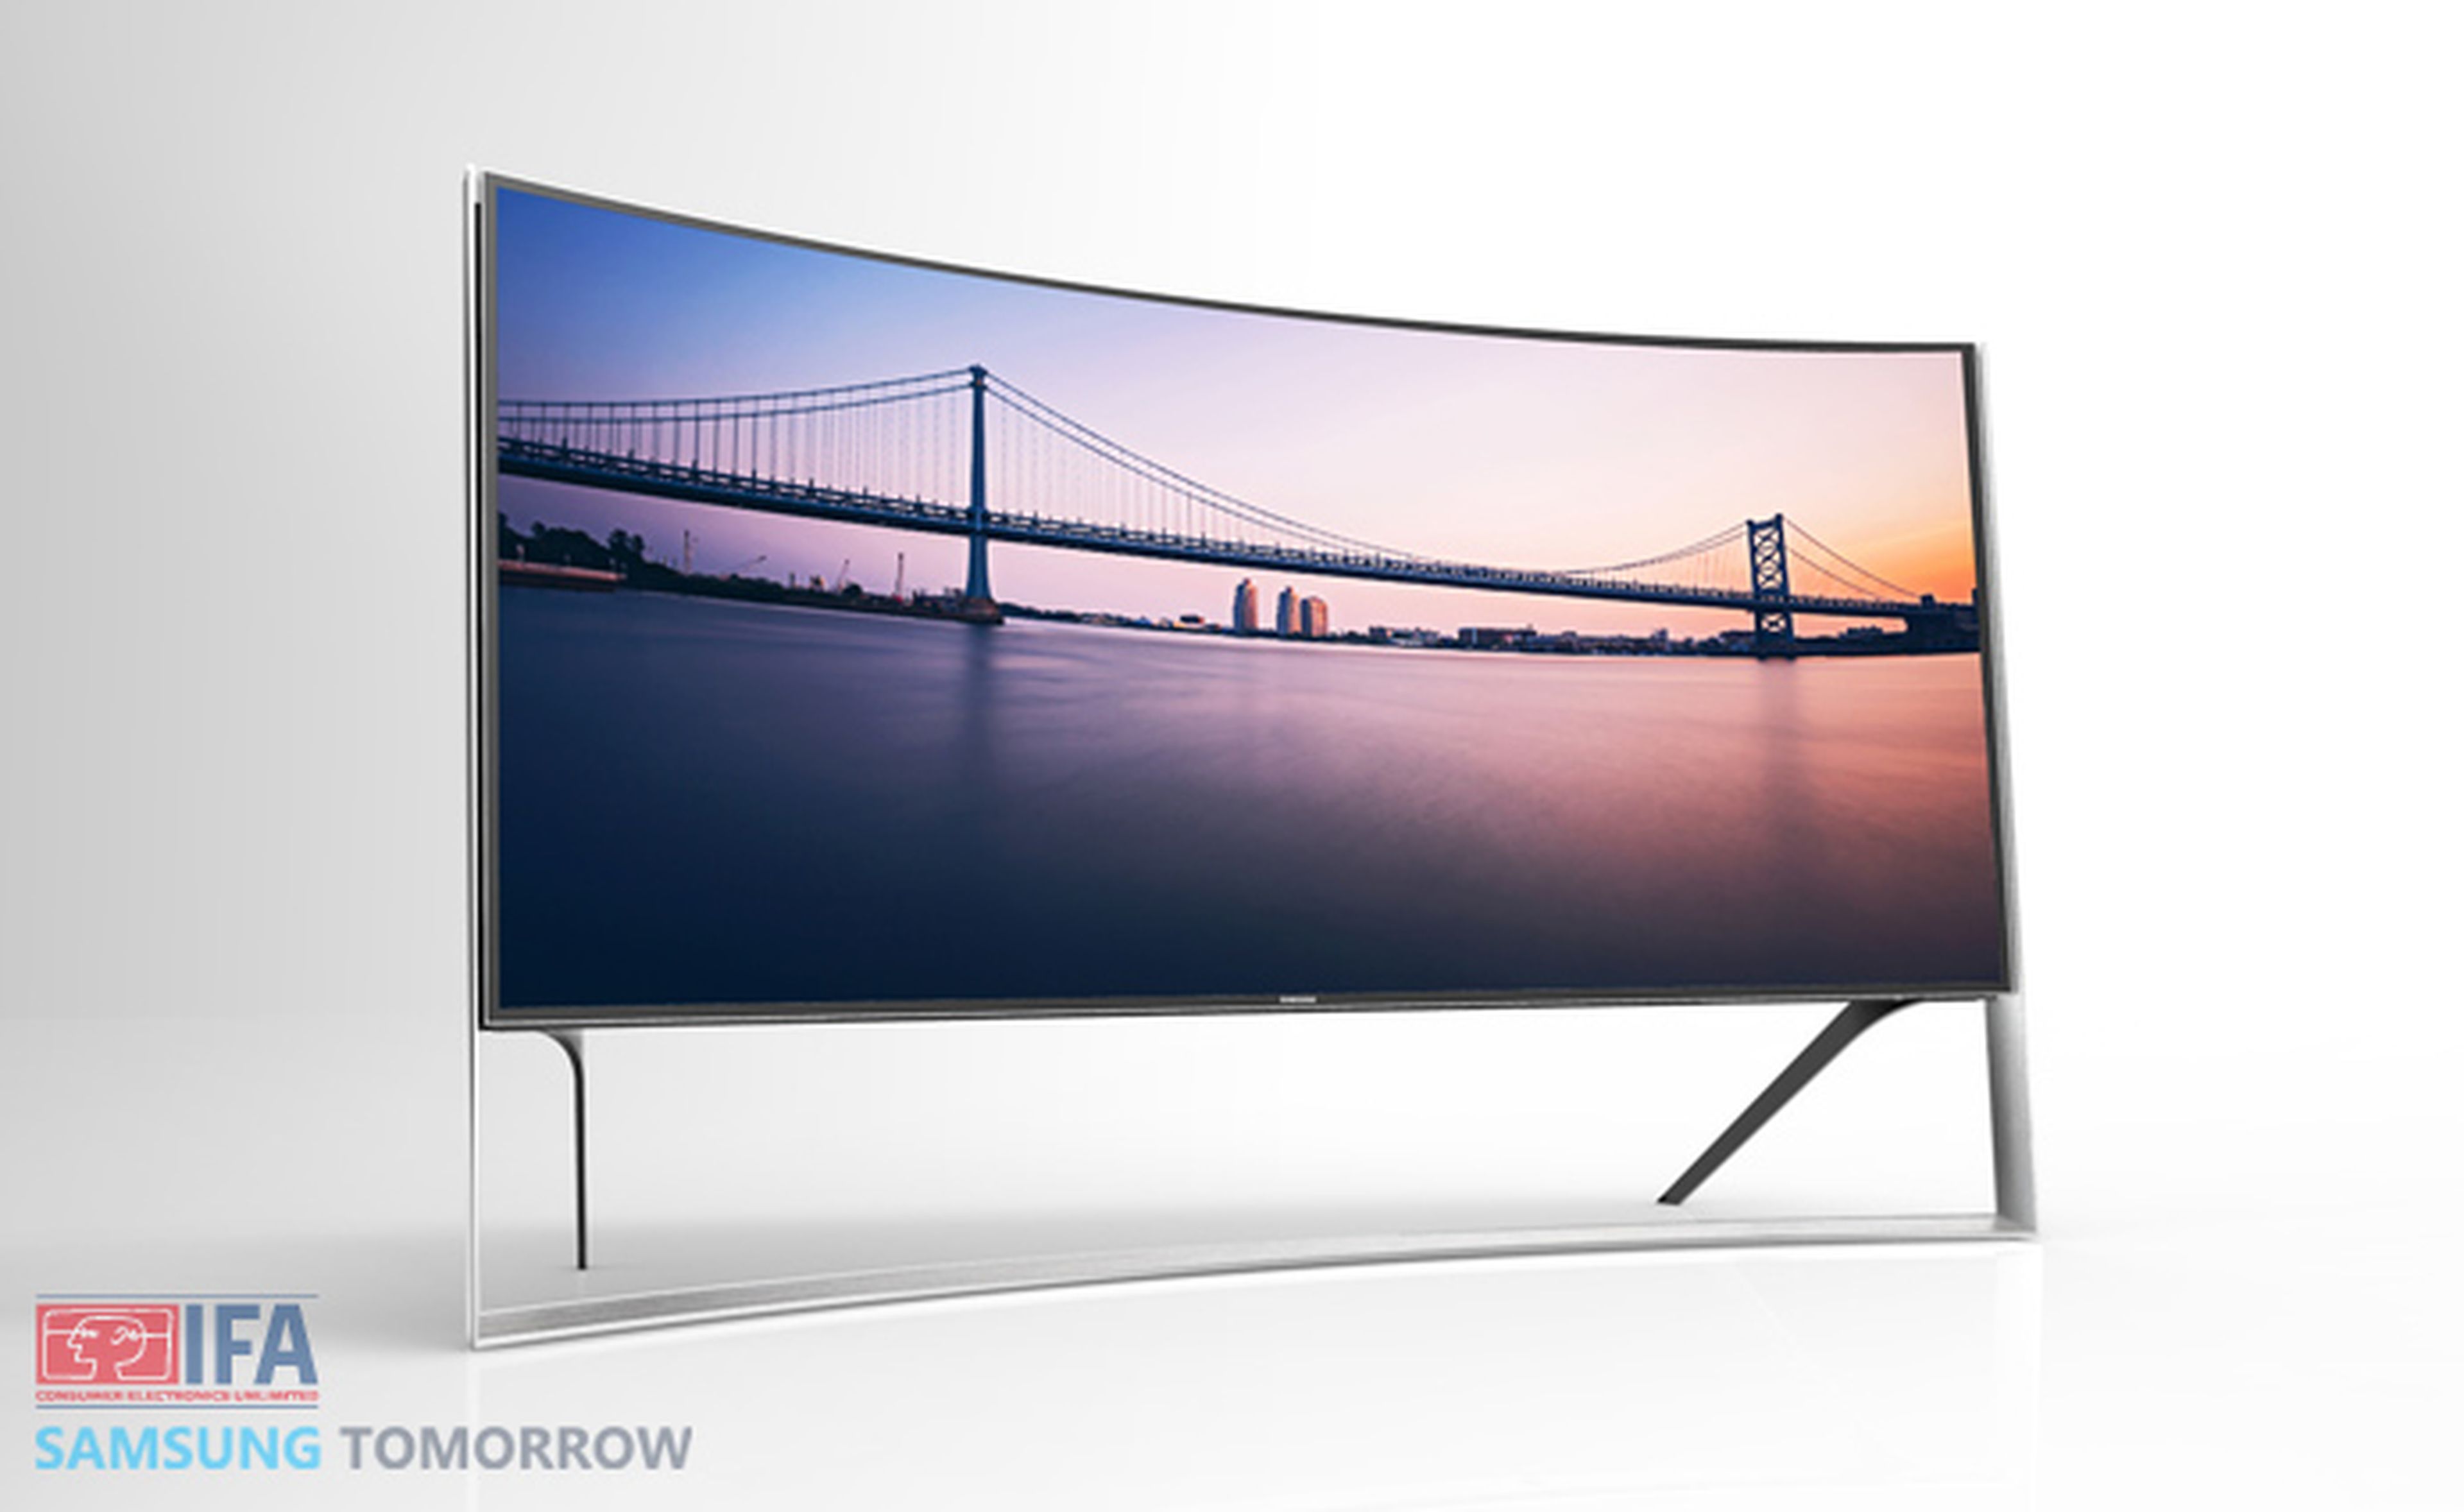 Samsung presenta 17 televisores con pantalla curva en IFA 2014, incluyendo la primera pantalla flexible del mundo